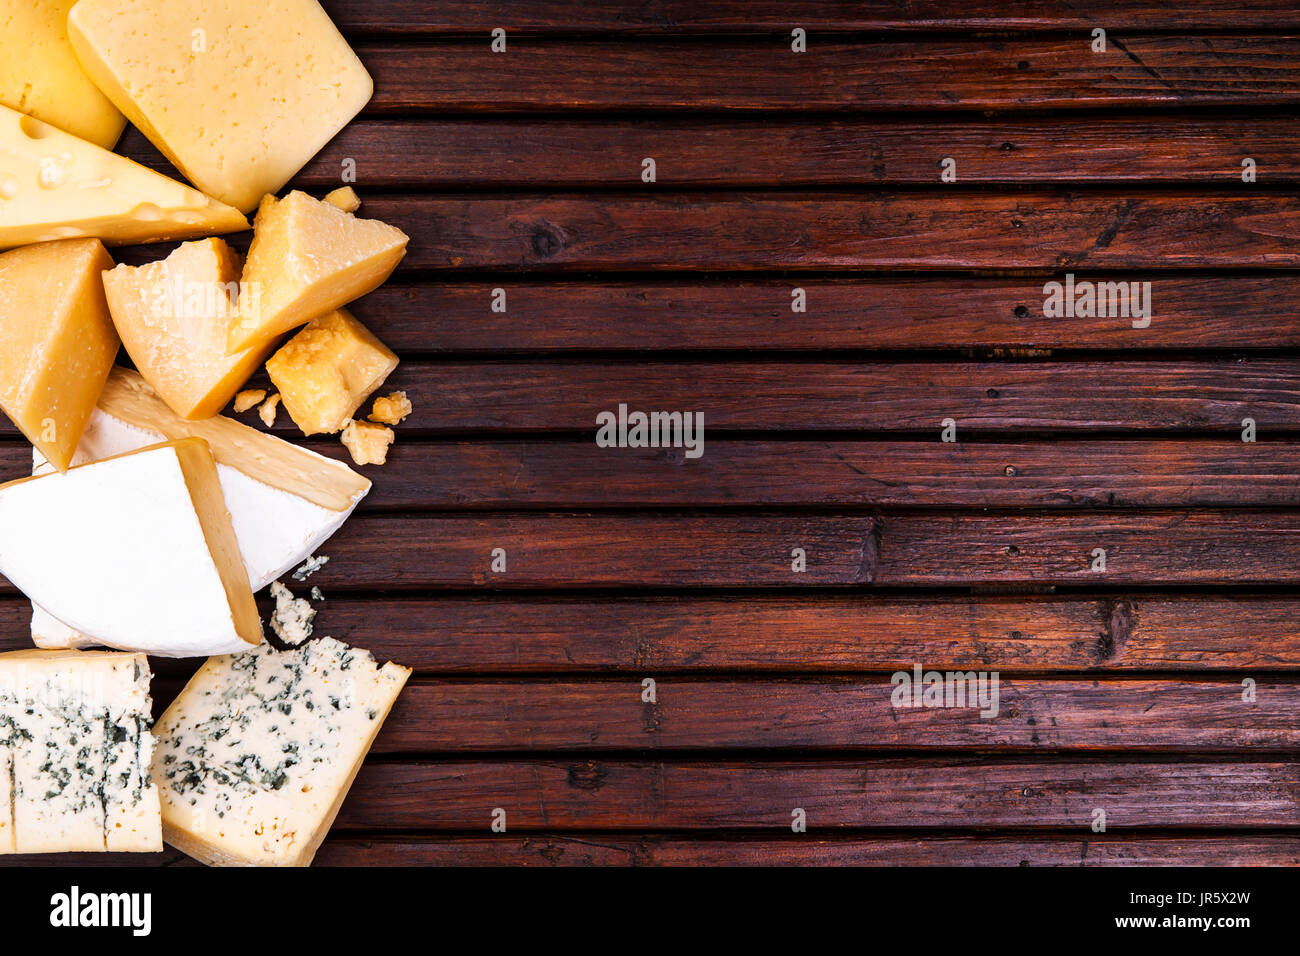 Vari tipi di formaggio su tavola in legno rustico, vista dall'alto Foto Stock